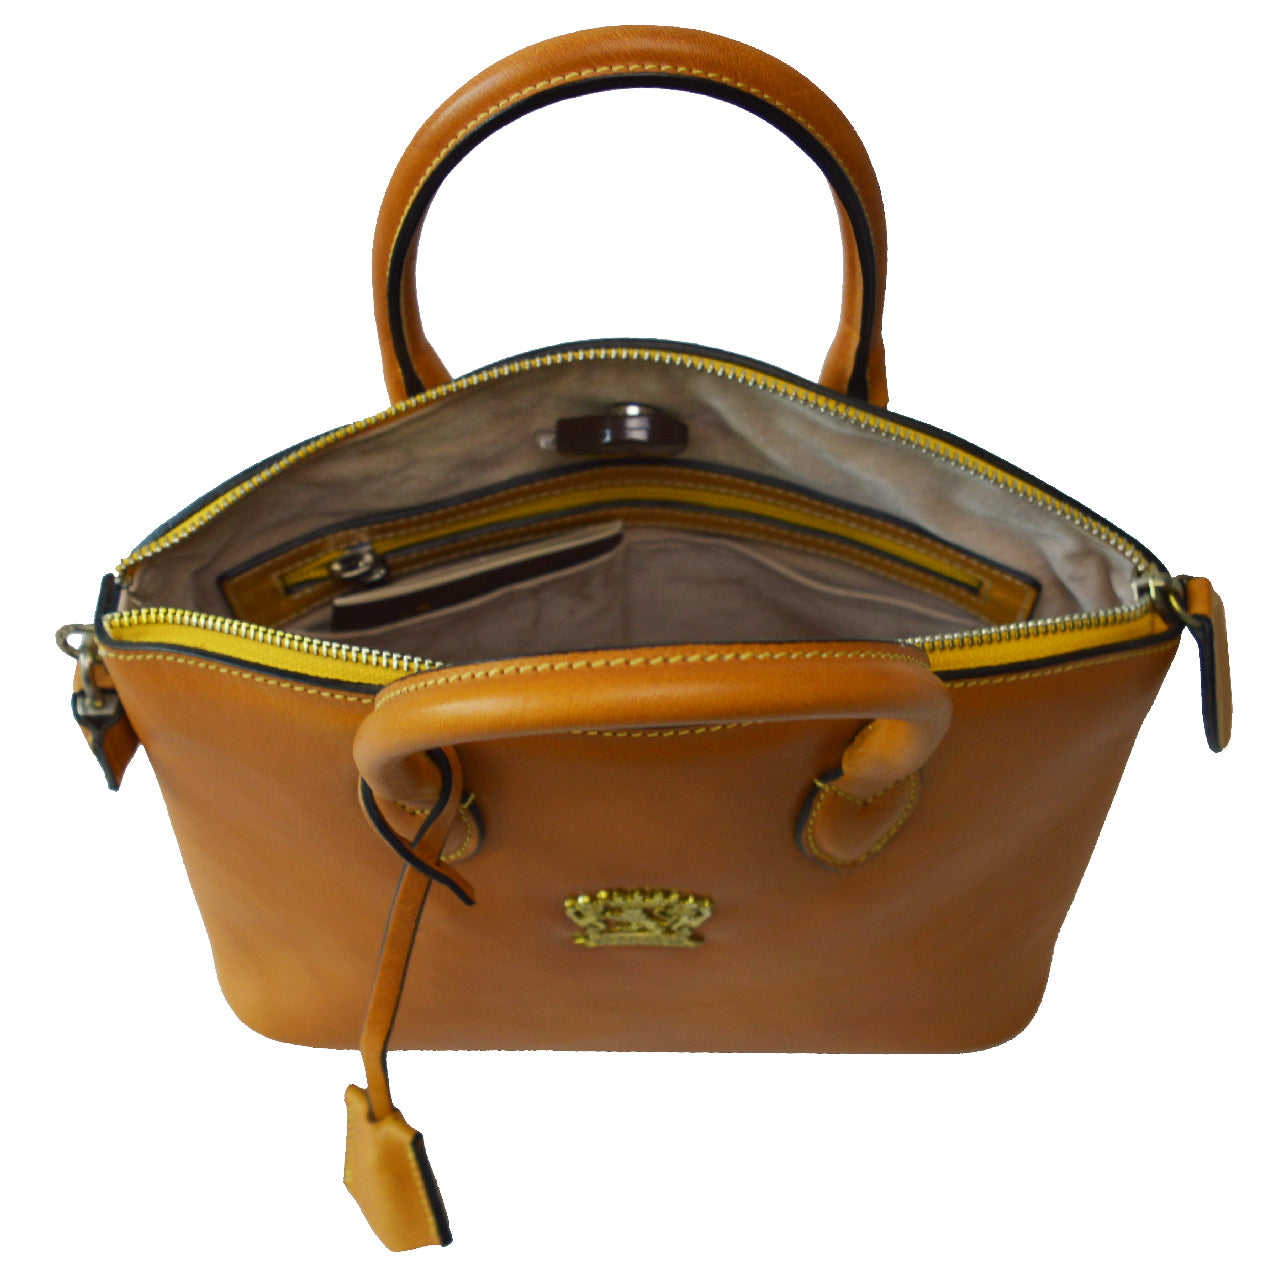 Pratesi Versilia Small Bruce Handbag in genuine Italian leather - Vegetable Tanned Italian Leather Black